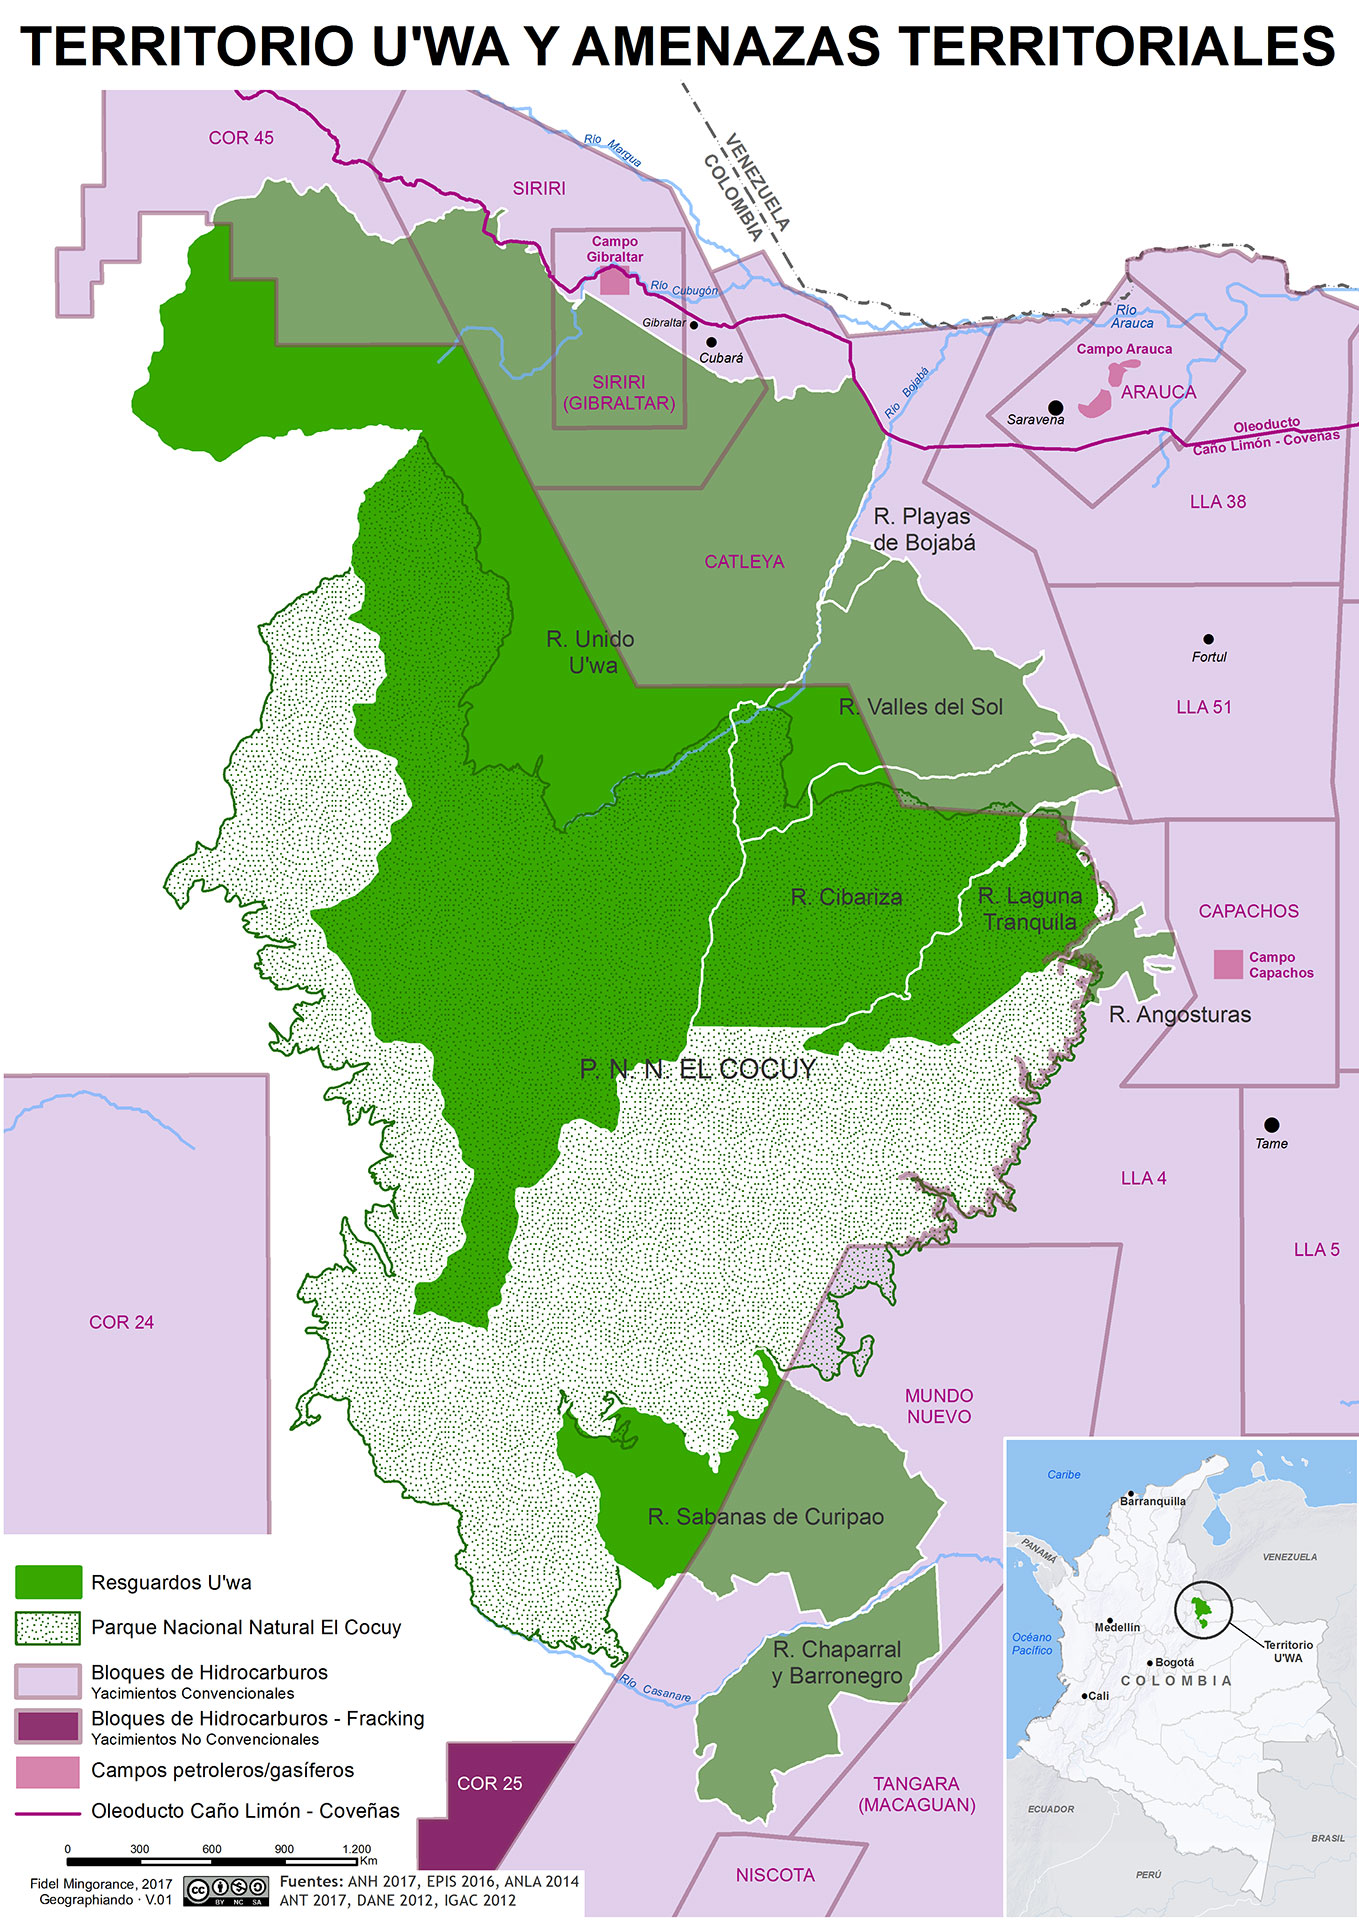 Territorio U'WA y bloques de hidrocarburos (2017)